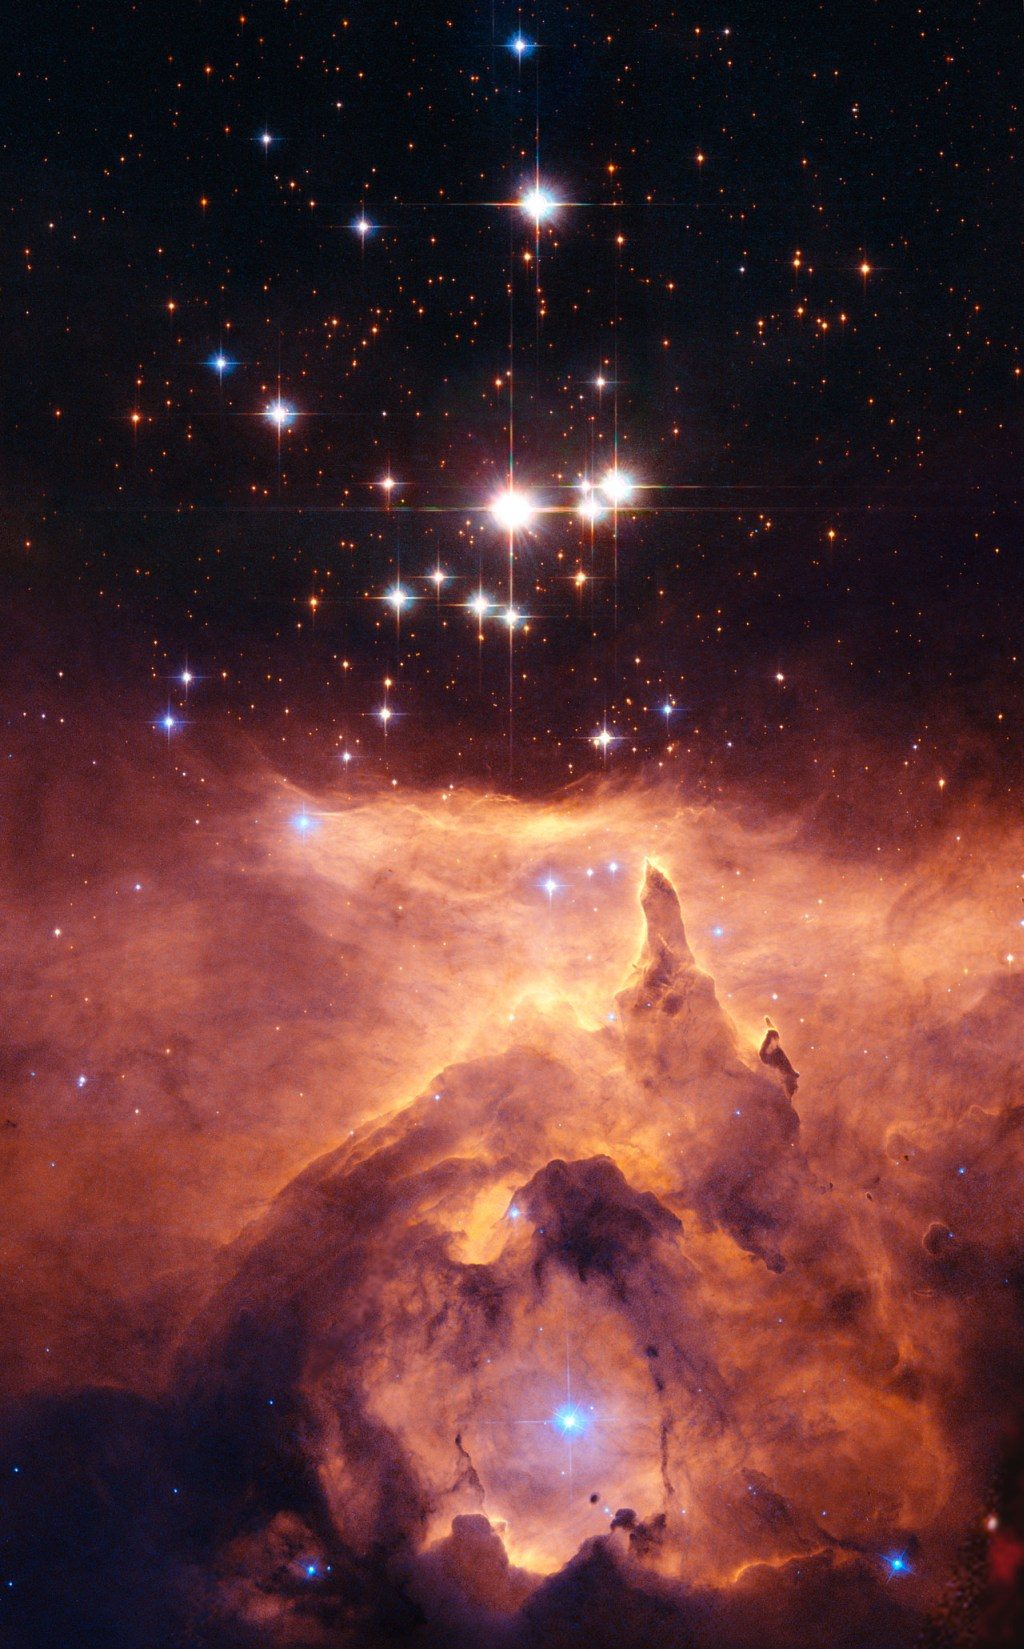 L'amas d'étoiles Prismis 24 situé dans la nébuleuse d'émission lumineuse NGC 6357